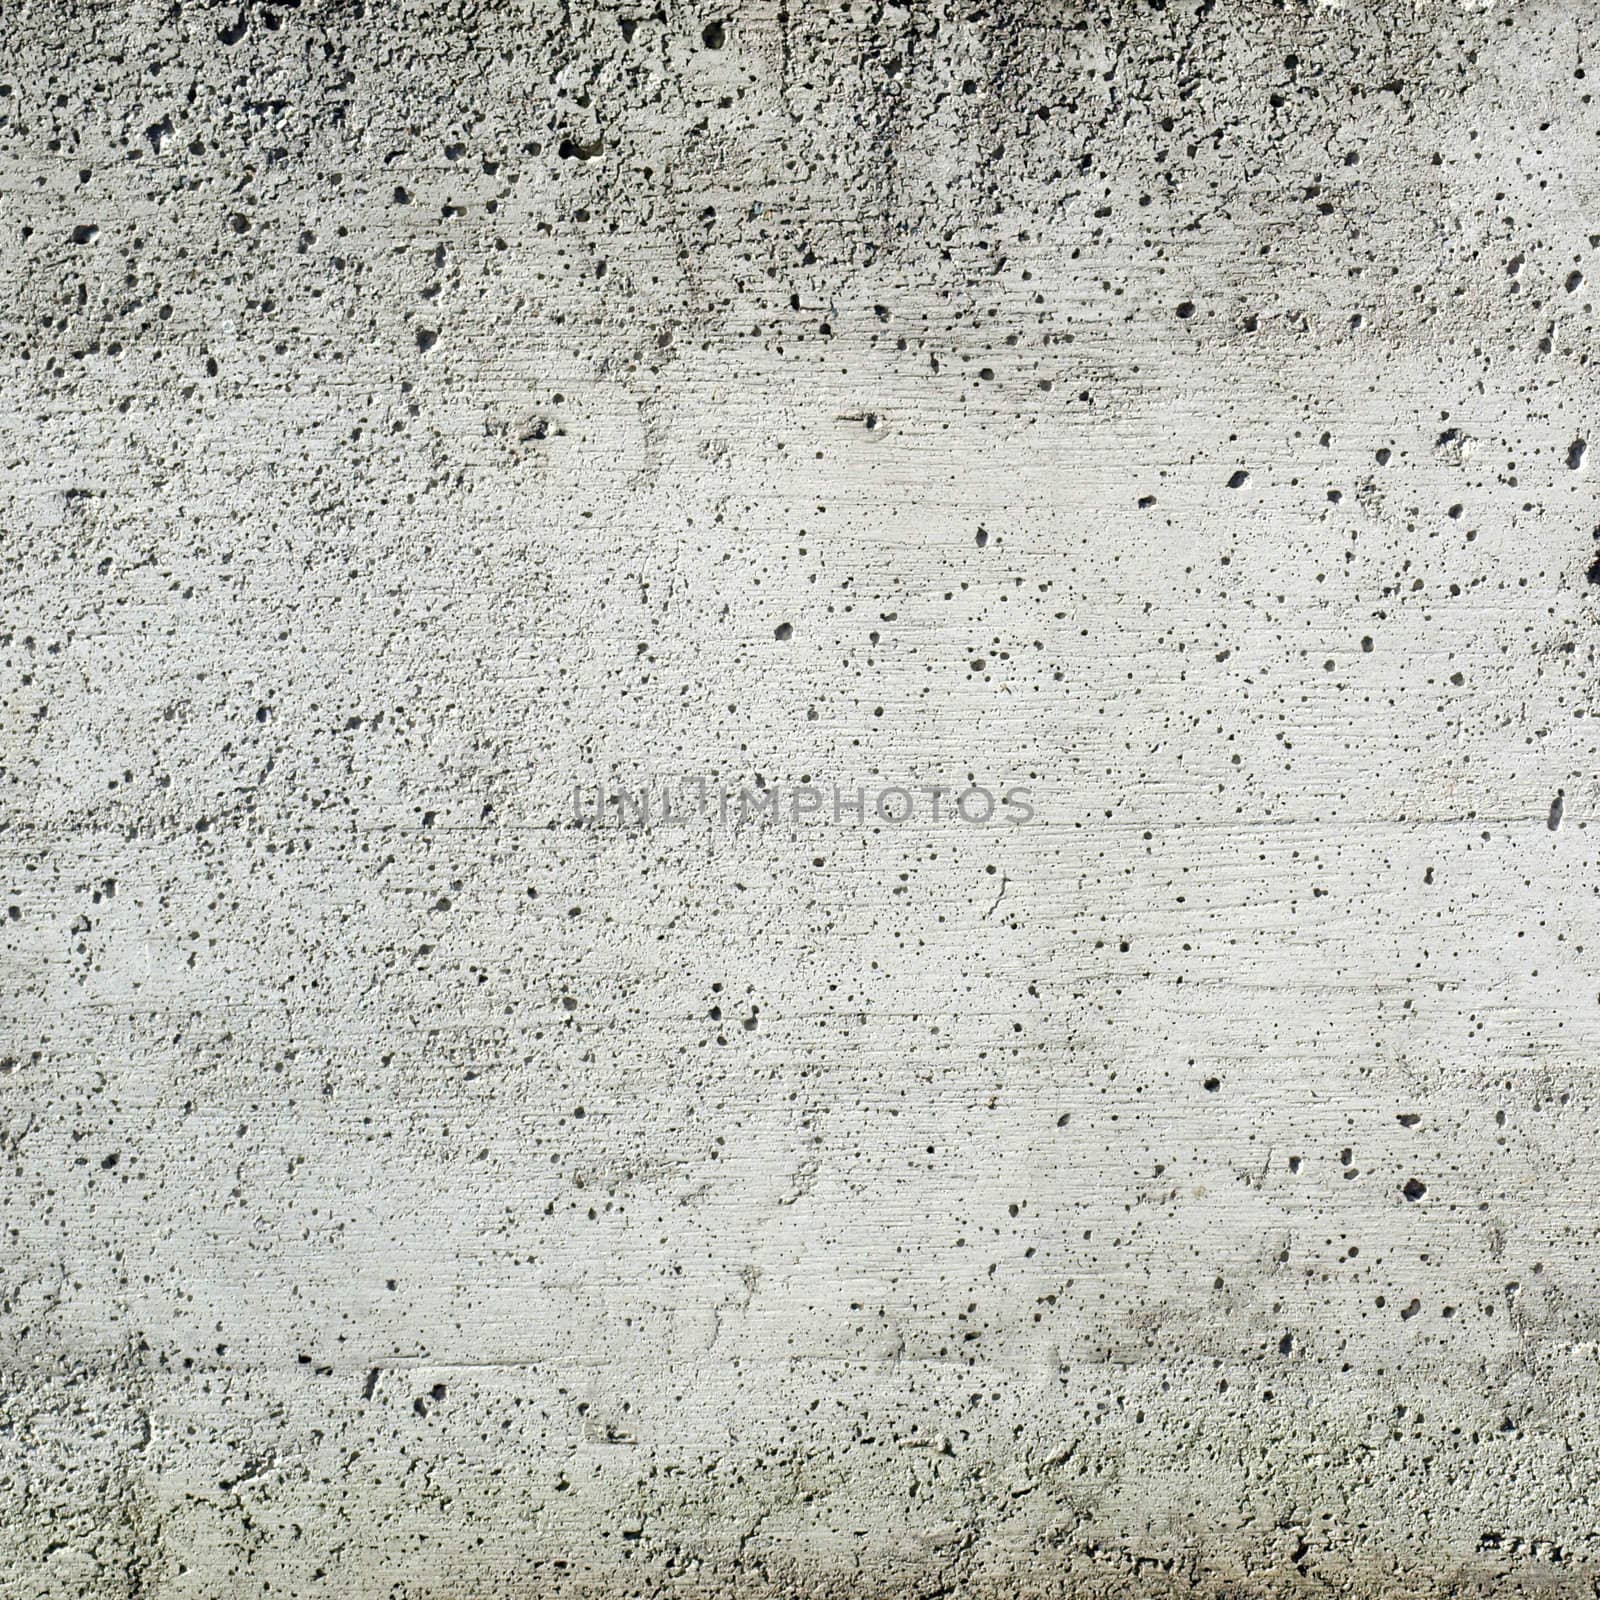 Concrete by claudiodivizia